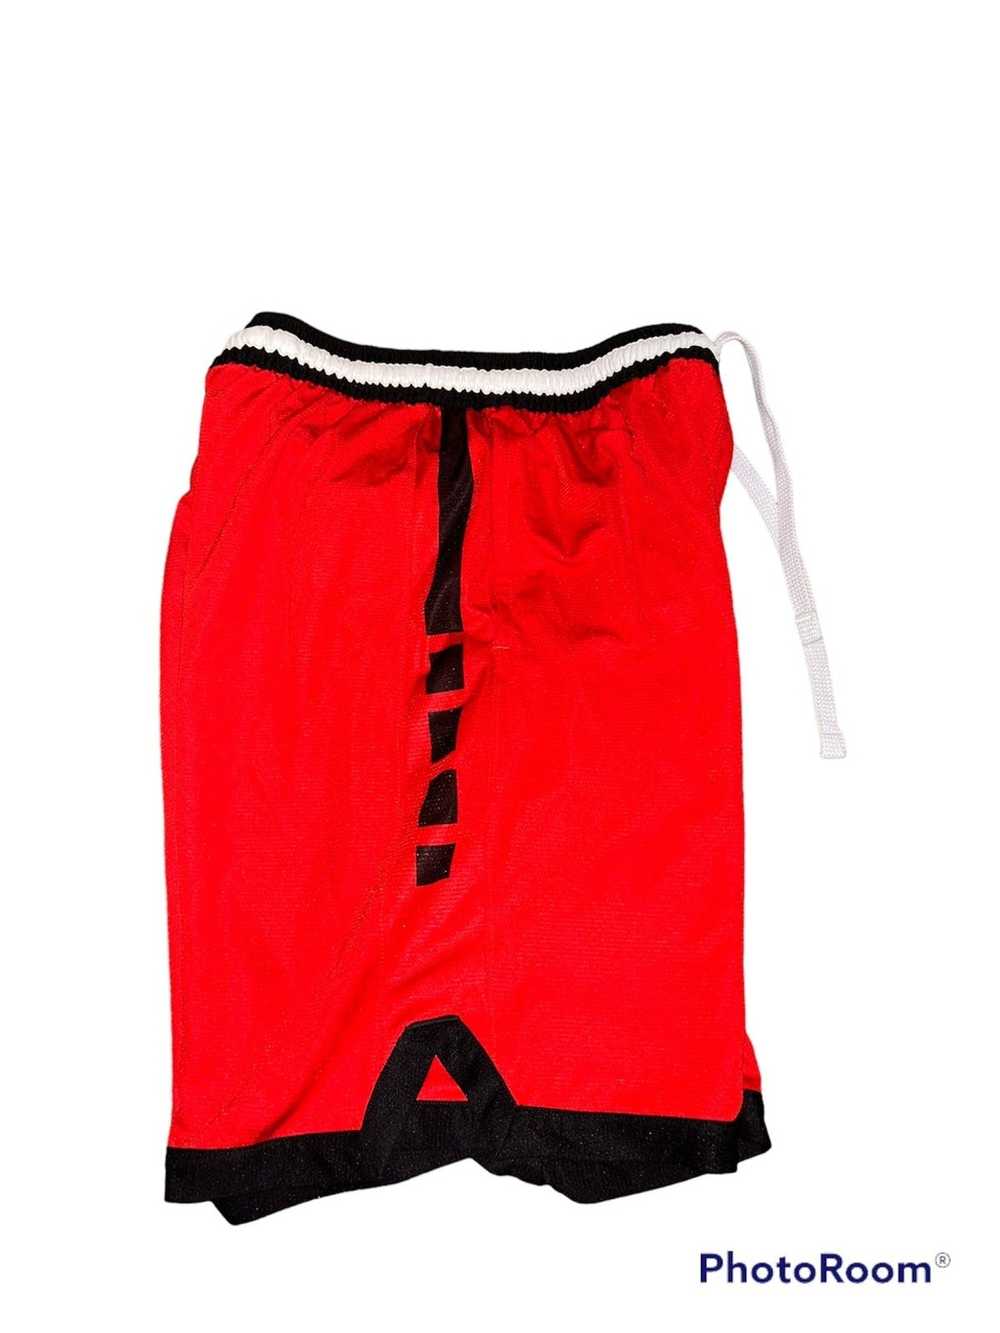 Nike Nike Elite Shorts Red - Men’s Medium - image 3